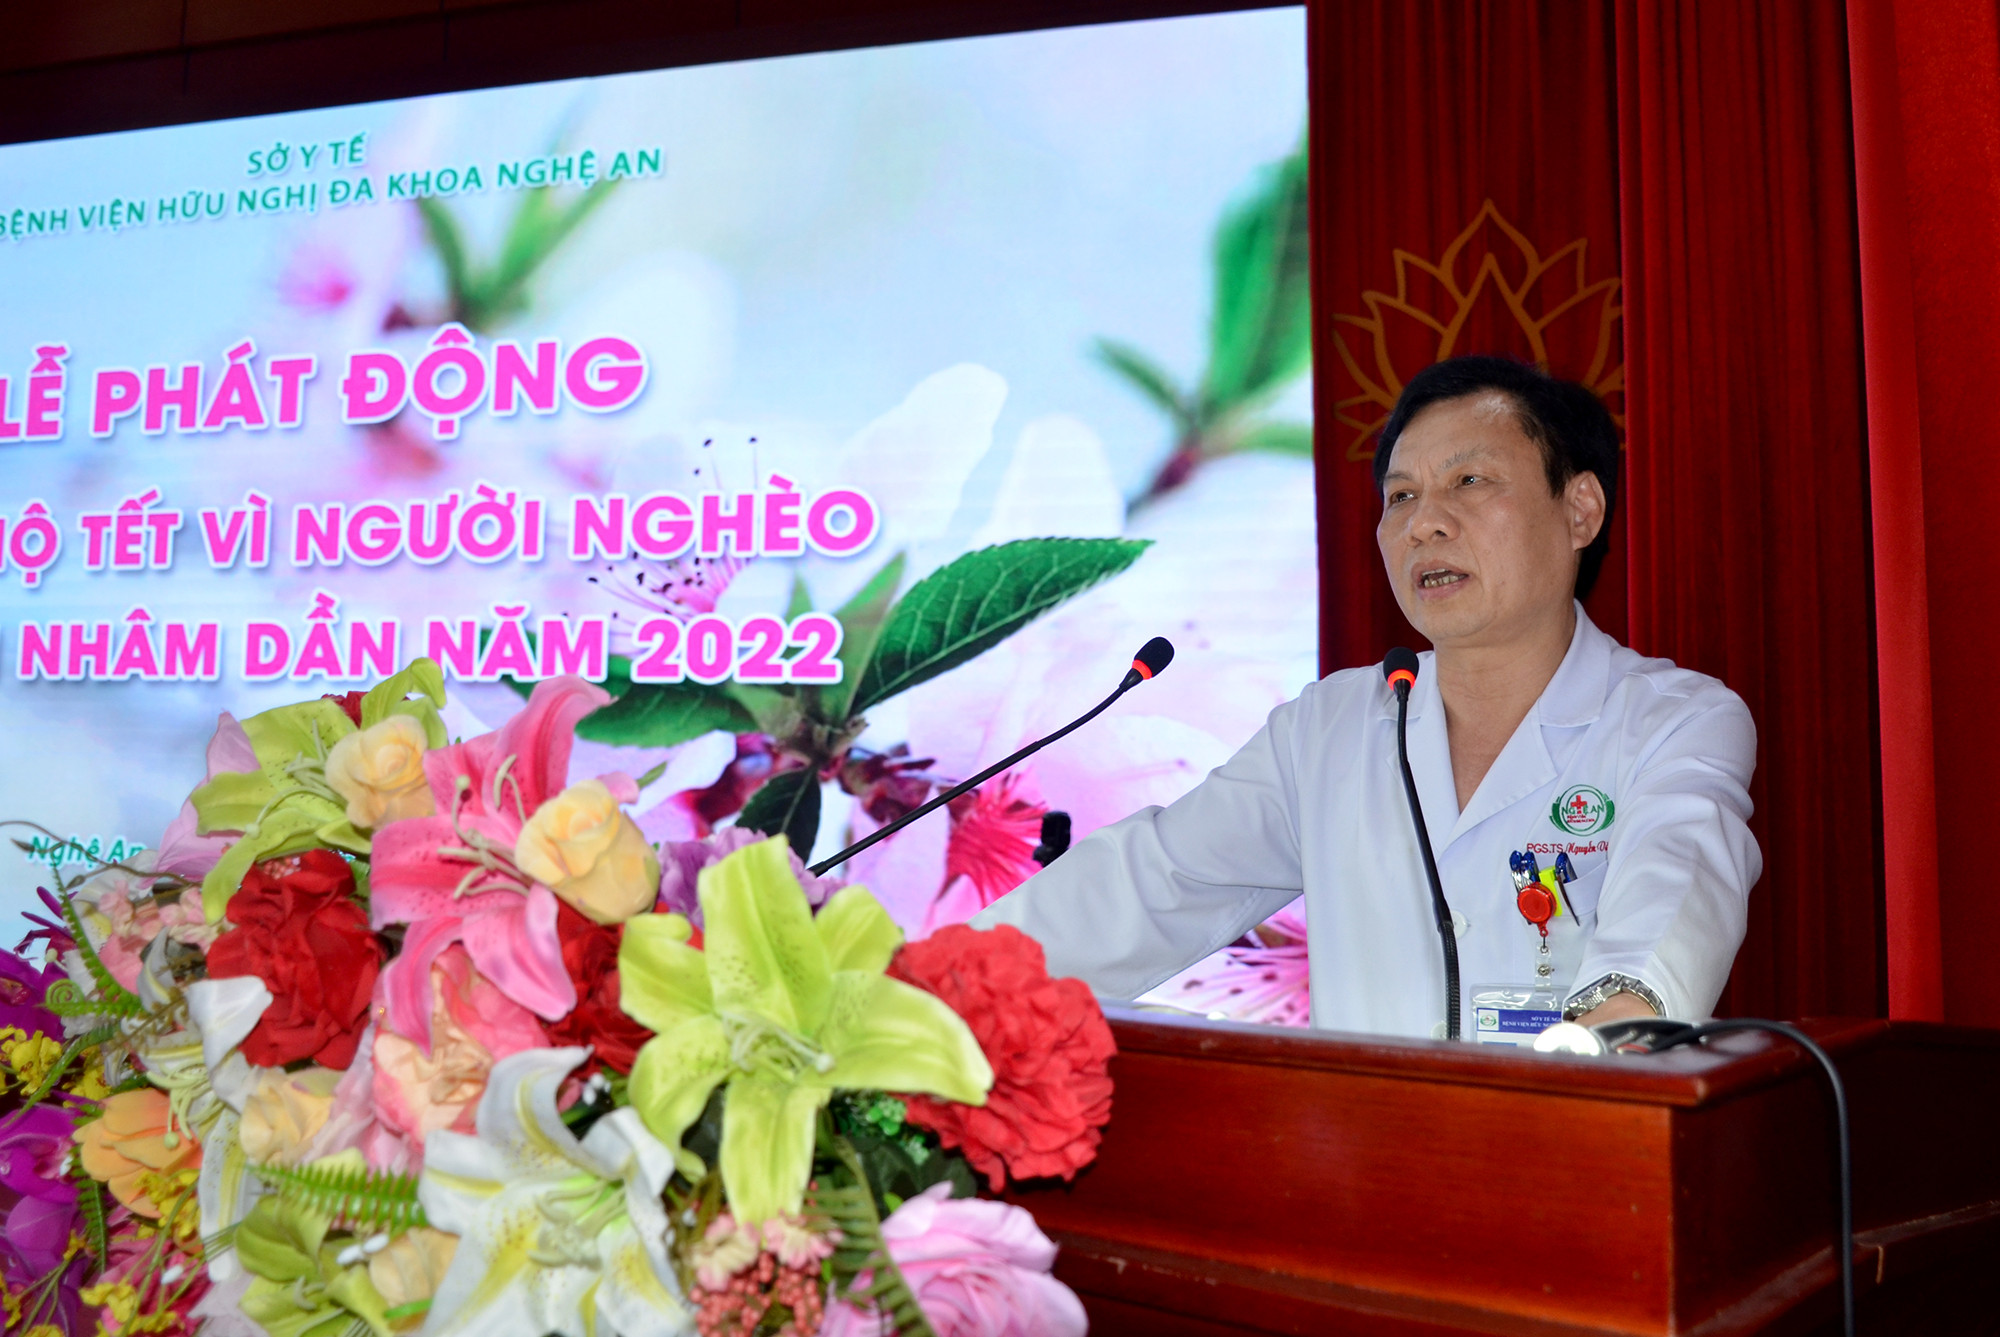 PGS.TS Nguyễn Văn Hương - Giám đốc Bệnh viện HNĐK Nghệ An. Ảnh Thành Chung